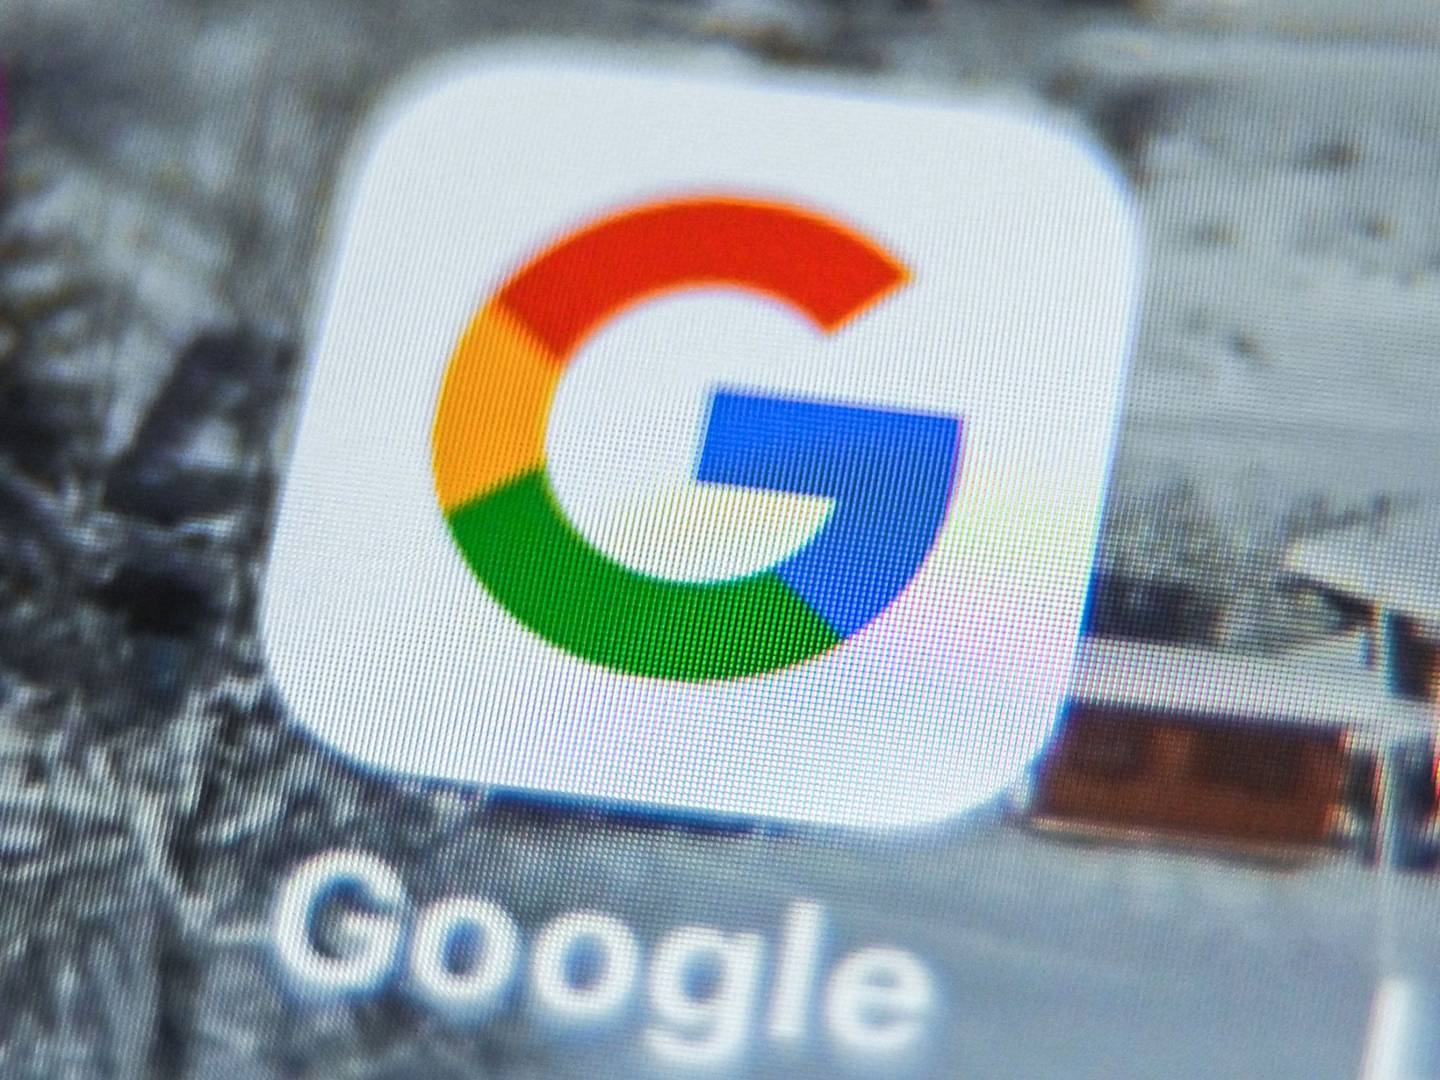 Aplicación de Google en una tableta.  Fotógrafo: Denis Charlet/AFP/Getty Images